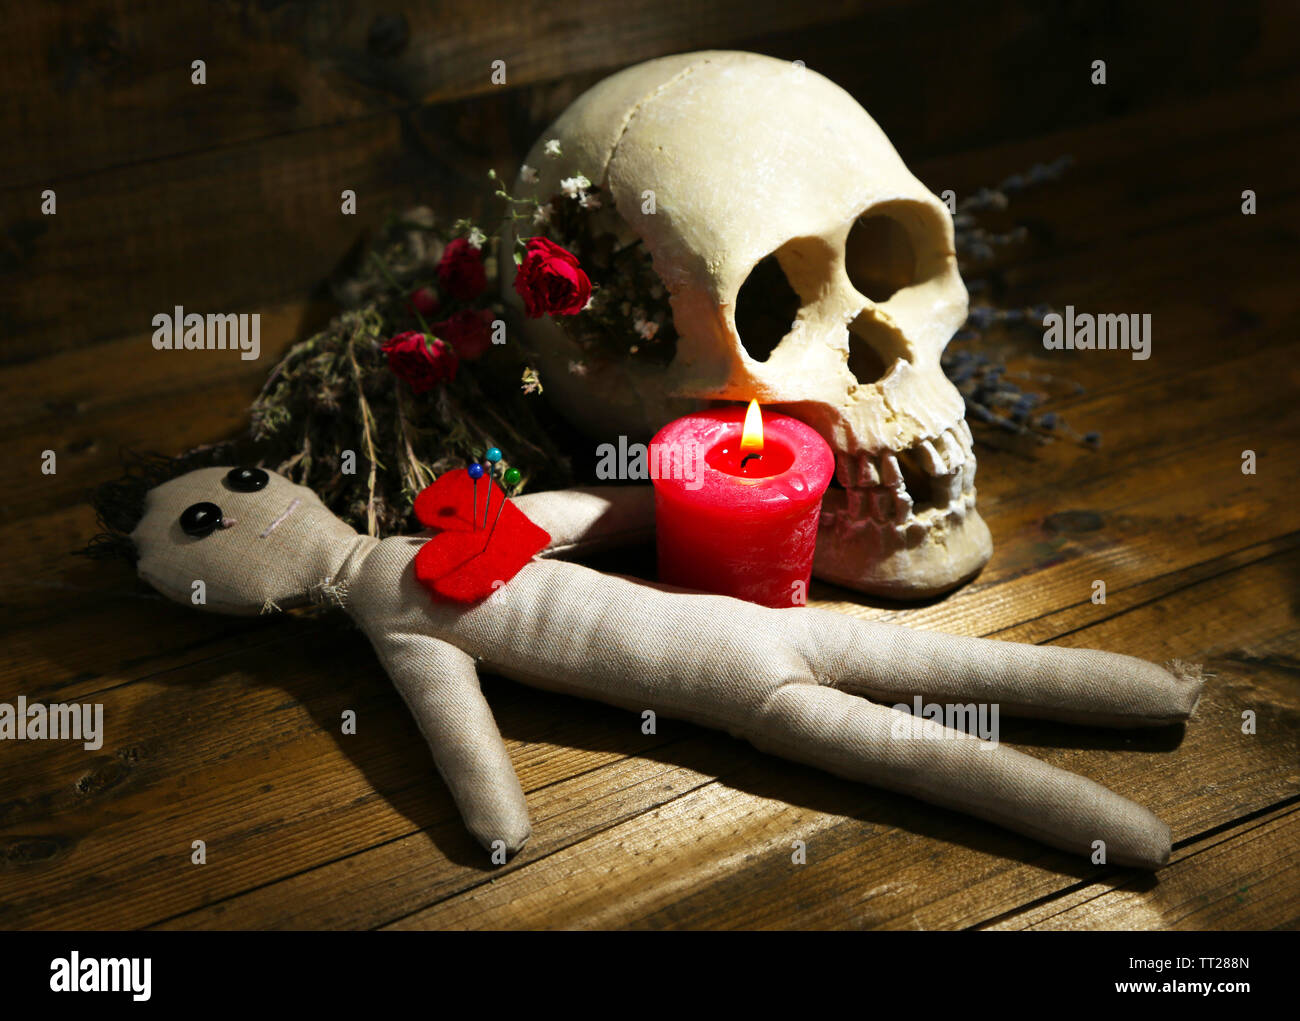 Konzeptionelle Foto Liebe Magie. Komposition mit Totenkopf, Voodoo-Puppe,  getrocknete Kräuter und Kerze auf dunklem Holz Stockfotografie - Alamy